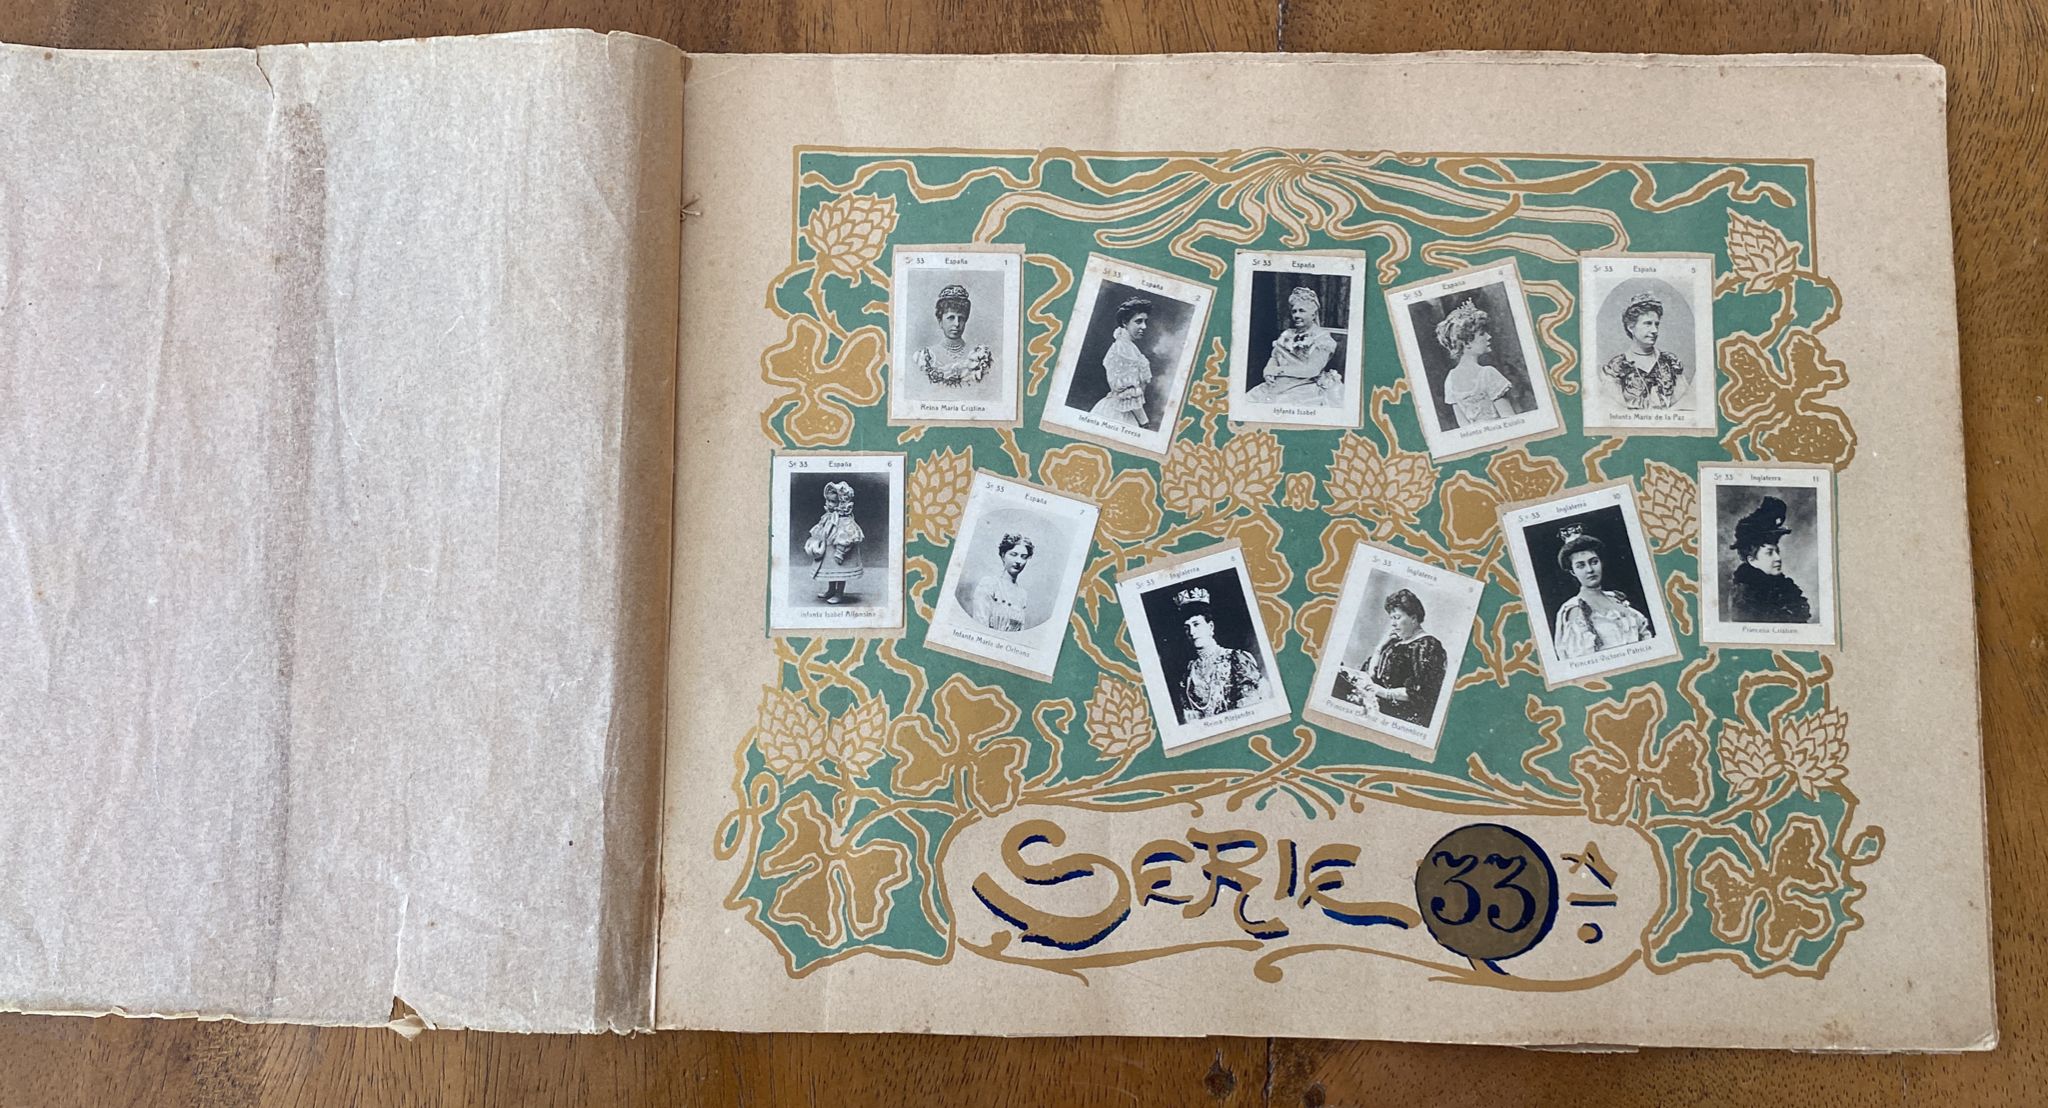 Álbum de Cajas de Cerillas Serie 33. Monarquías Completo 75 fototipias. MUY RARO